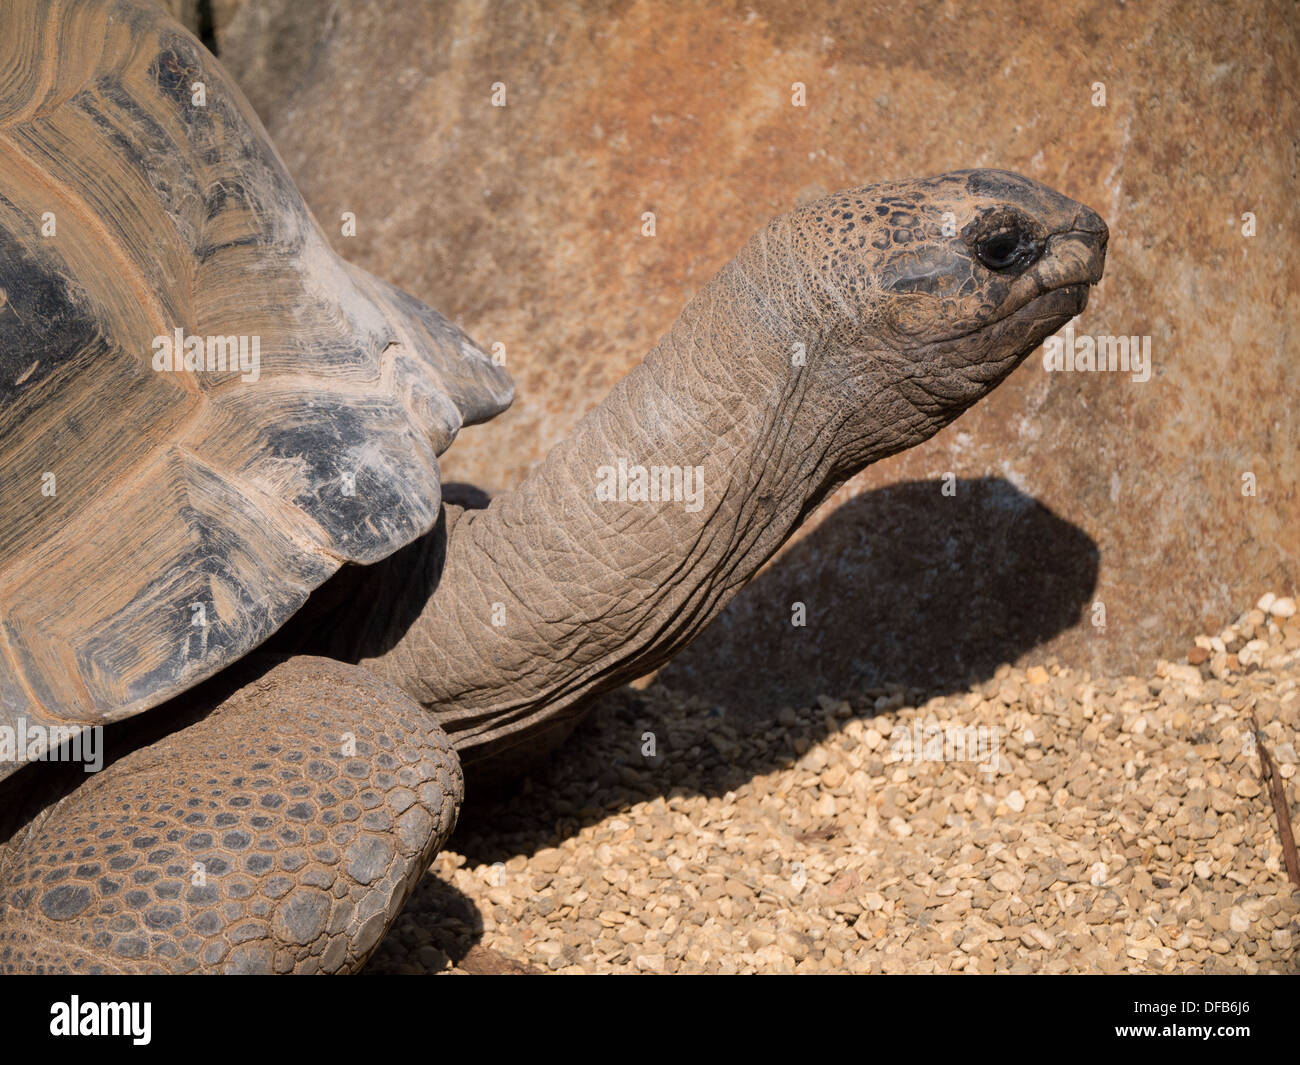 La tortue géante d'Aldabra (Aldabrachelys gigantea) au zoo de Twycross, Tamworth, Royaume-Uni. Banque D'Images